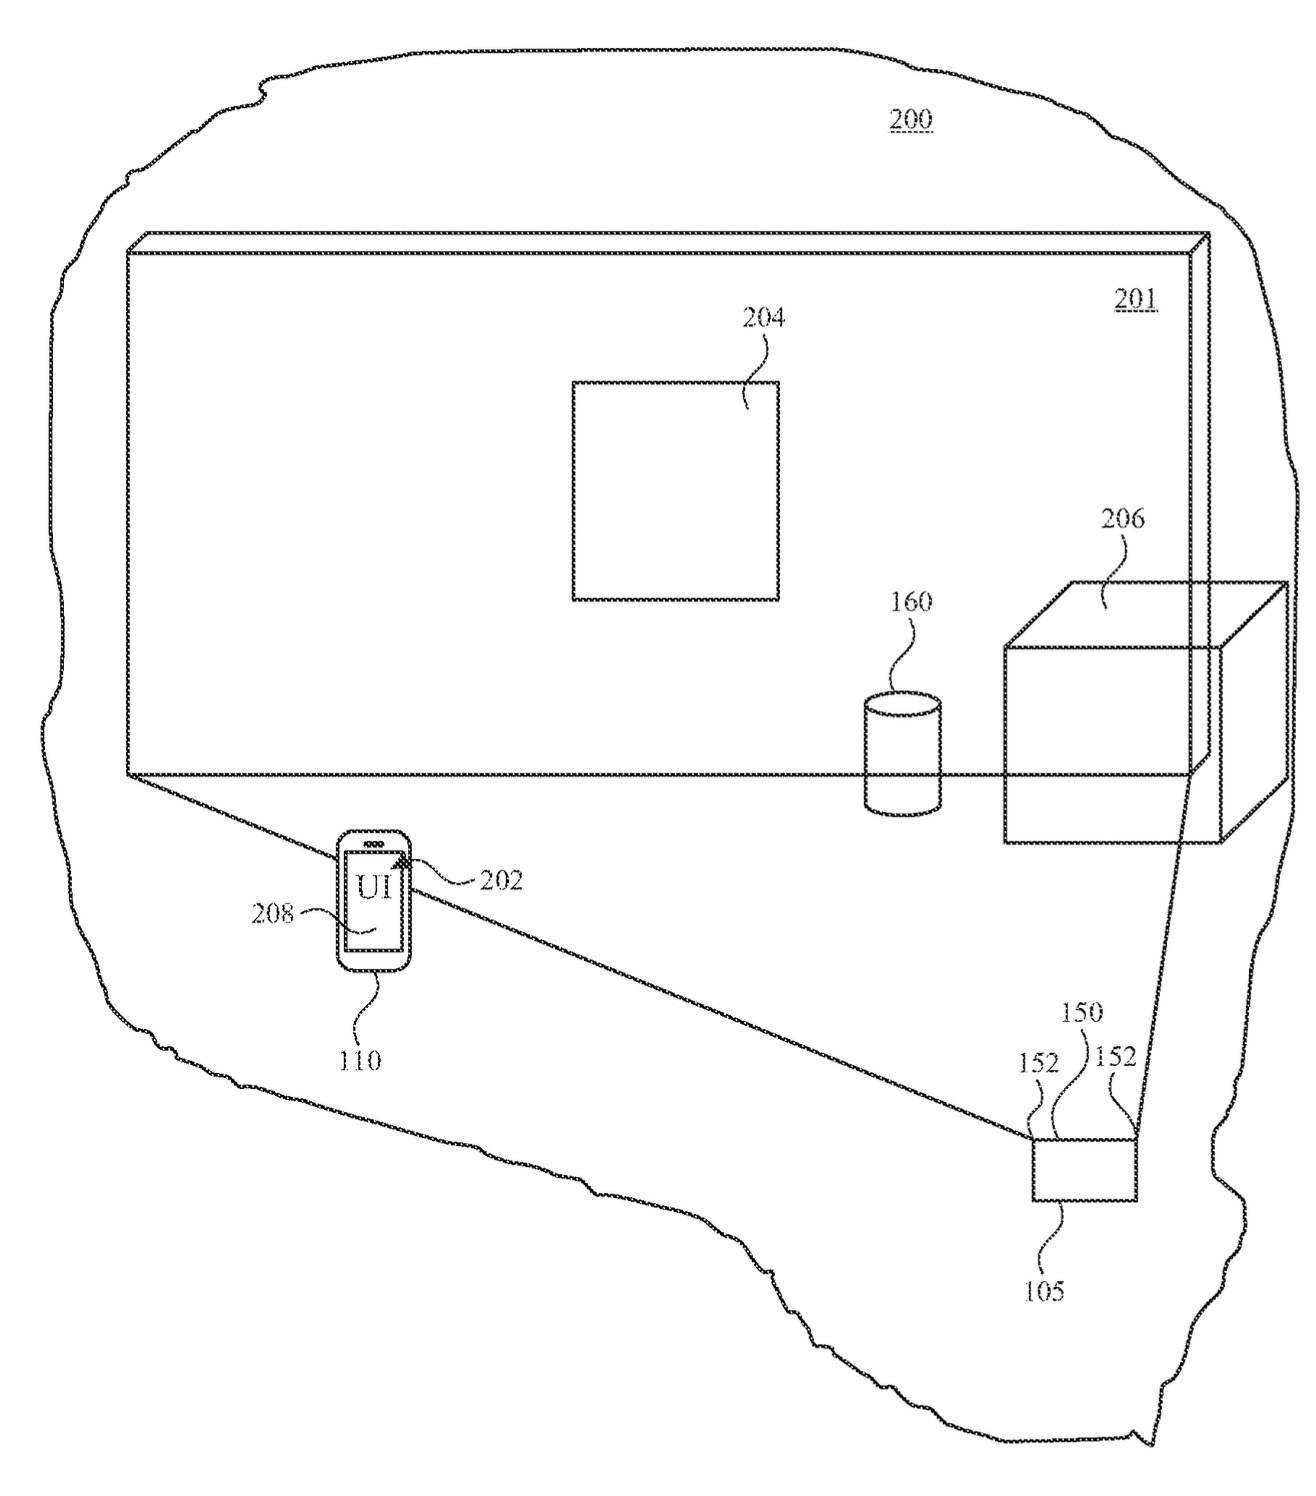 Patente de Apple describiendo un sistema de continuidad que permite continuar haciendo en otro dispositivo de realidad aumentada o virtual lo que se estaba haciendo antes en un iPhone